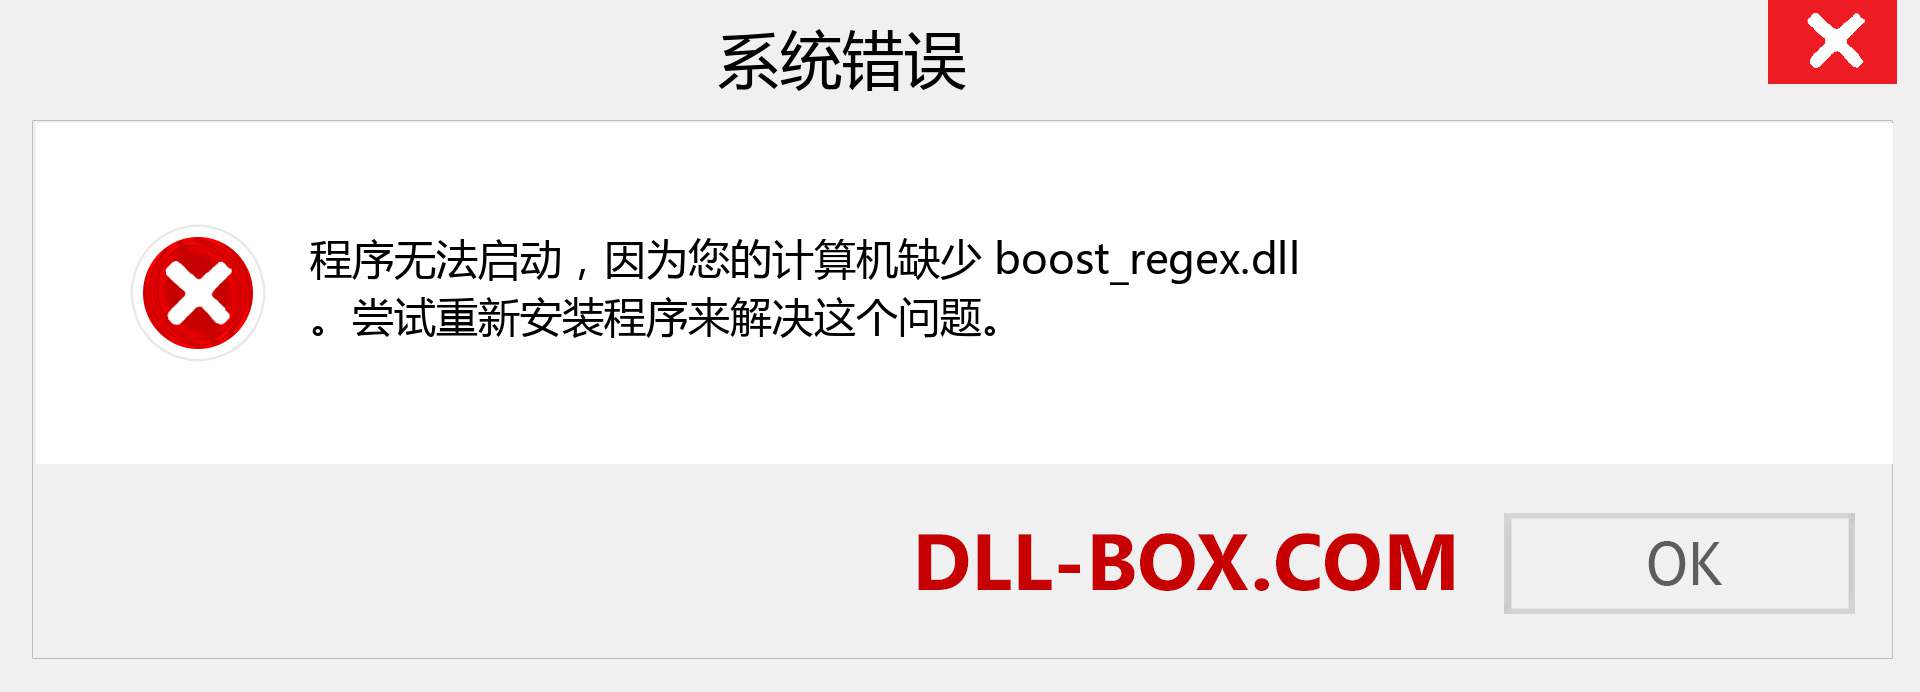 boost_regex.dll 文件丢失？。 适用于 Windows 7、8、10 的下载 - 修复 Windows、照片、图像上的 boost_regex dll 丢失错误